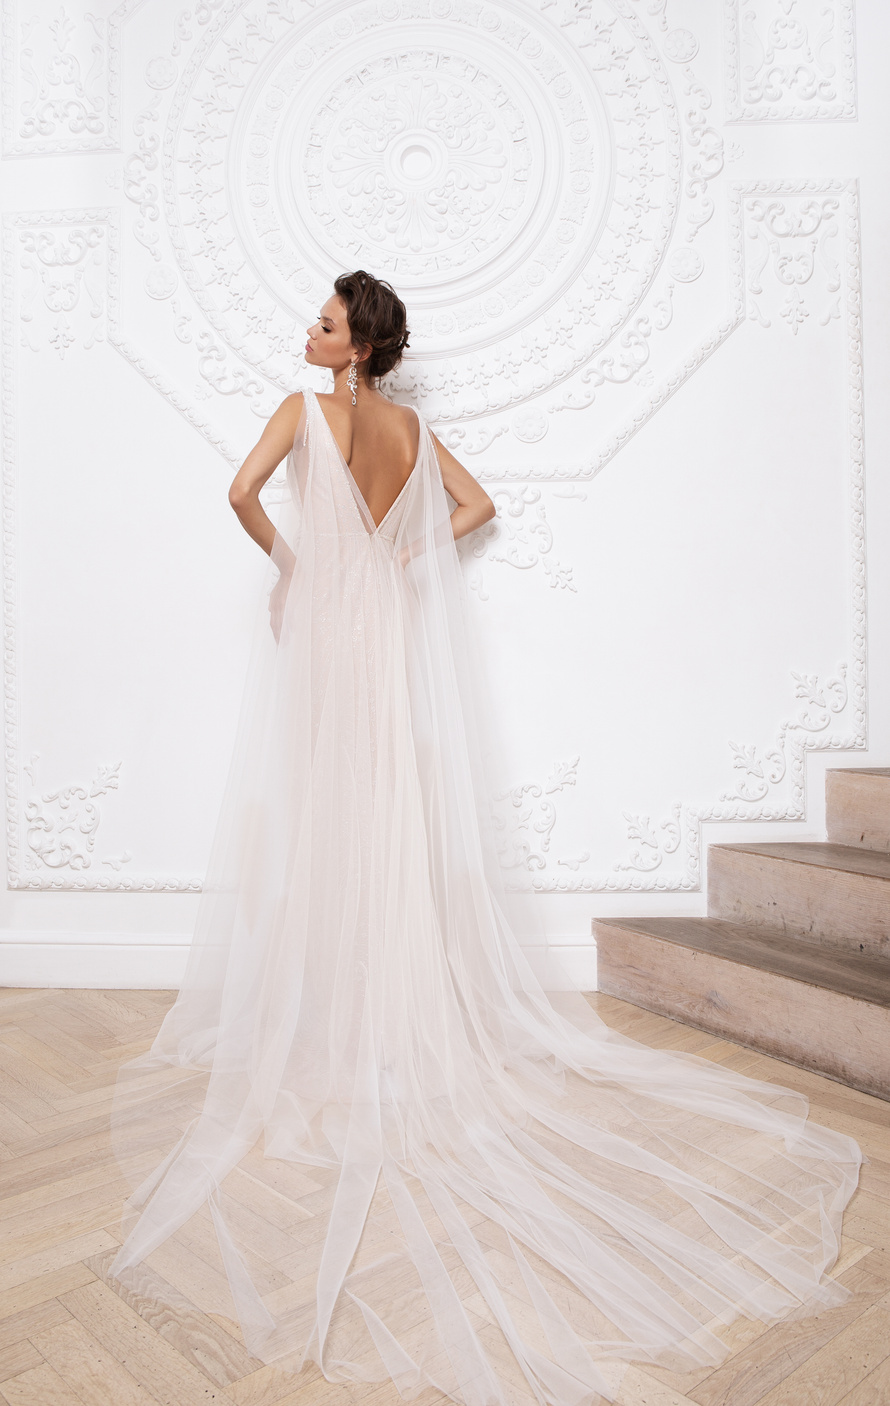 Купить свадебное платье «Прадин» Мэрри Марк из коллекции 2020 года в Екатеринбурге